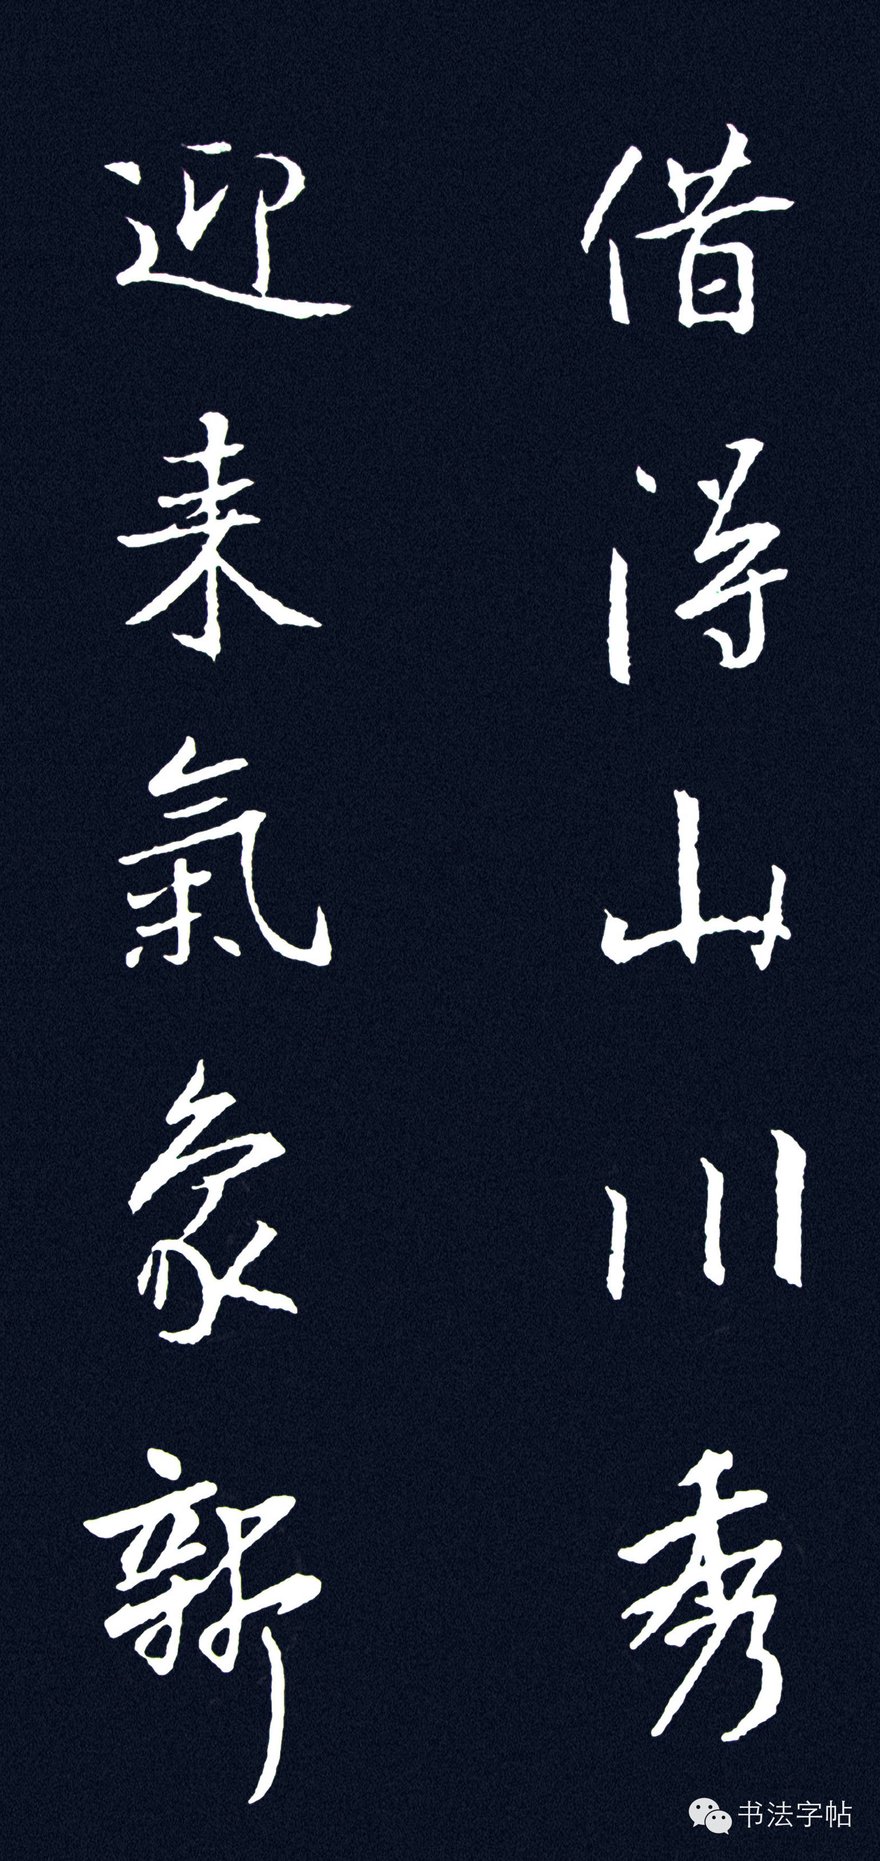 王羲之｜遒美健秀∥王羲之集字楹联欣赏| 自由微信| FreeWeChat